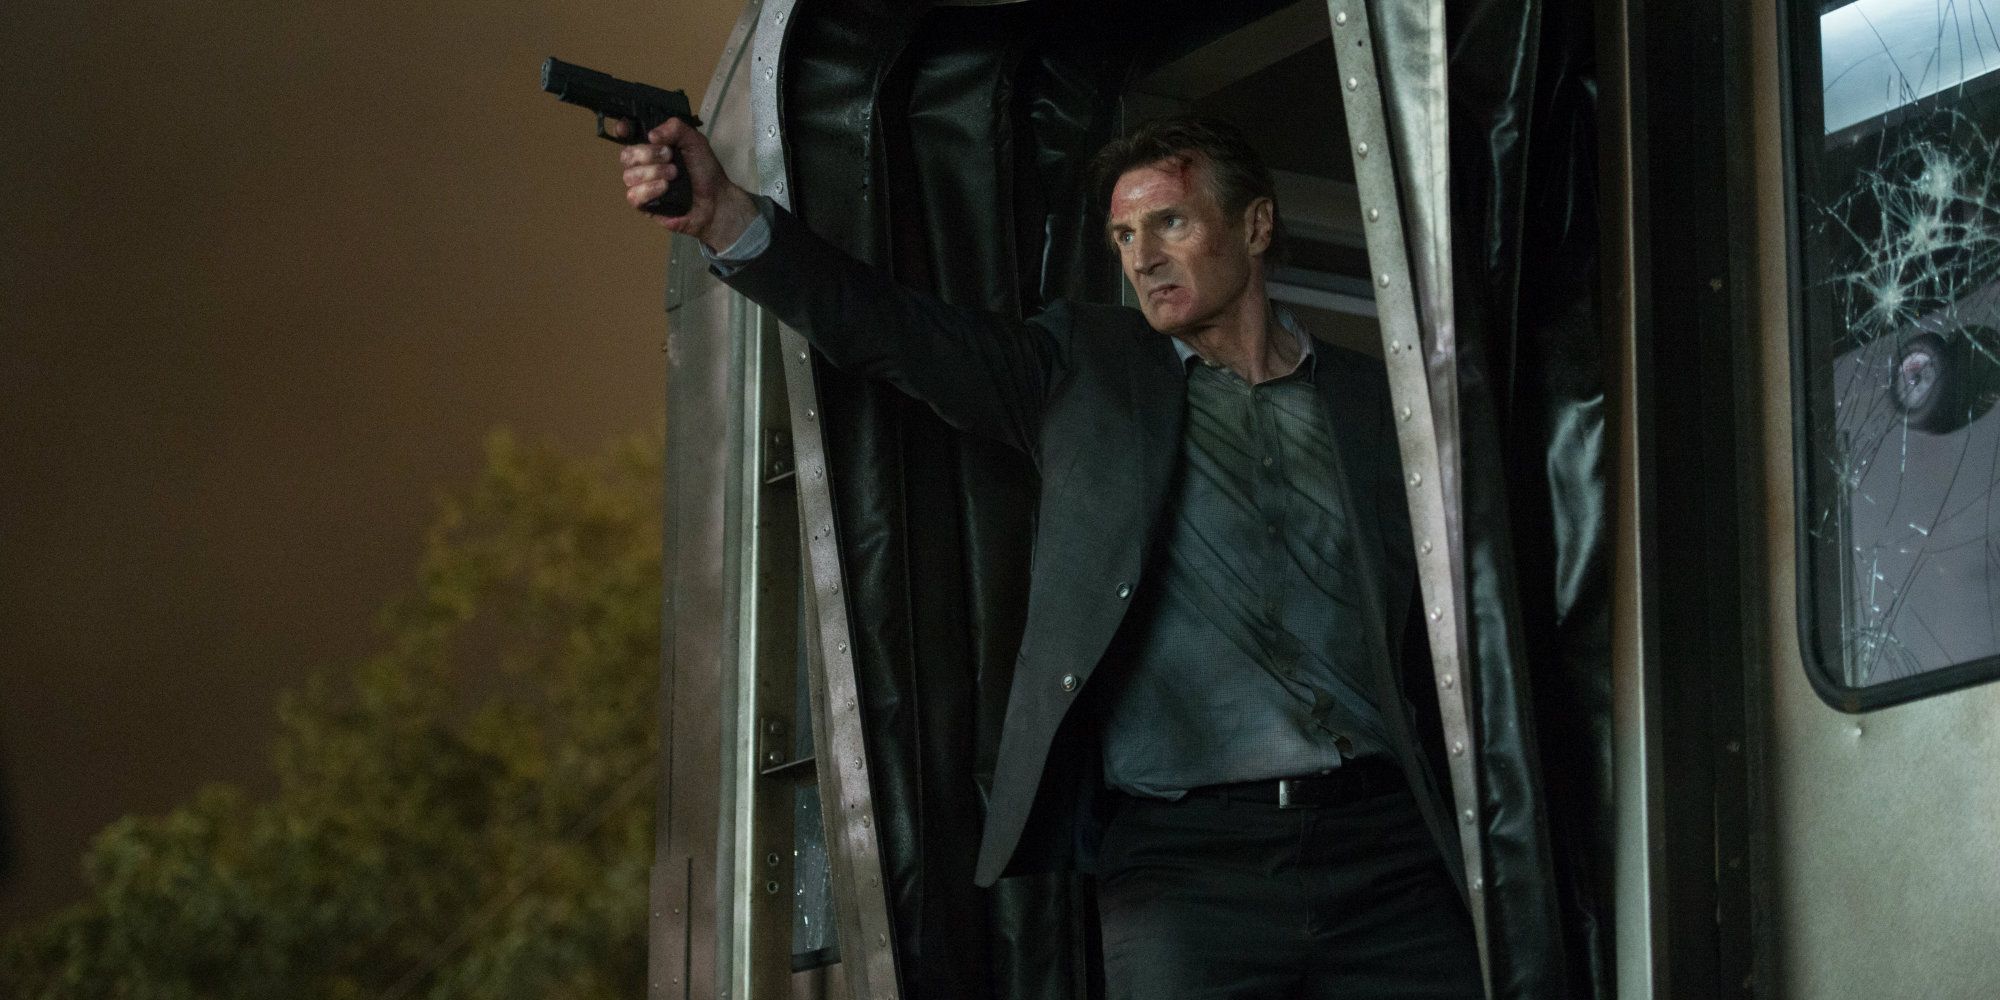 Liam Neeson pointing a gun in Bullet Train